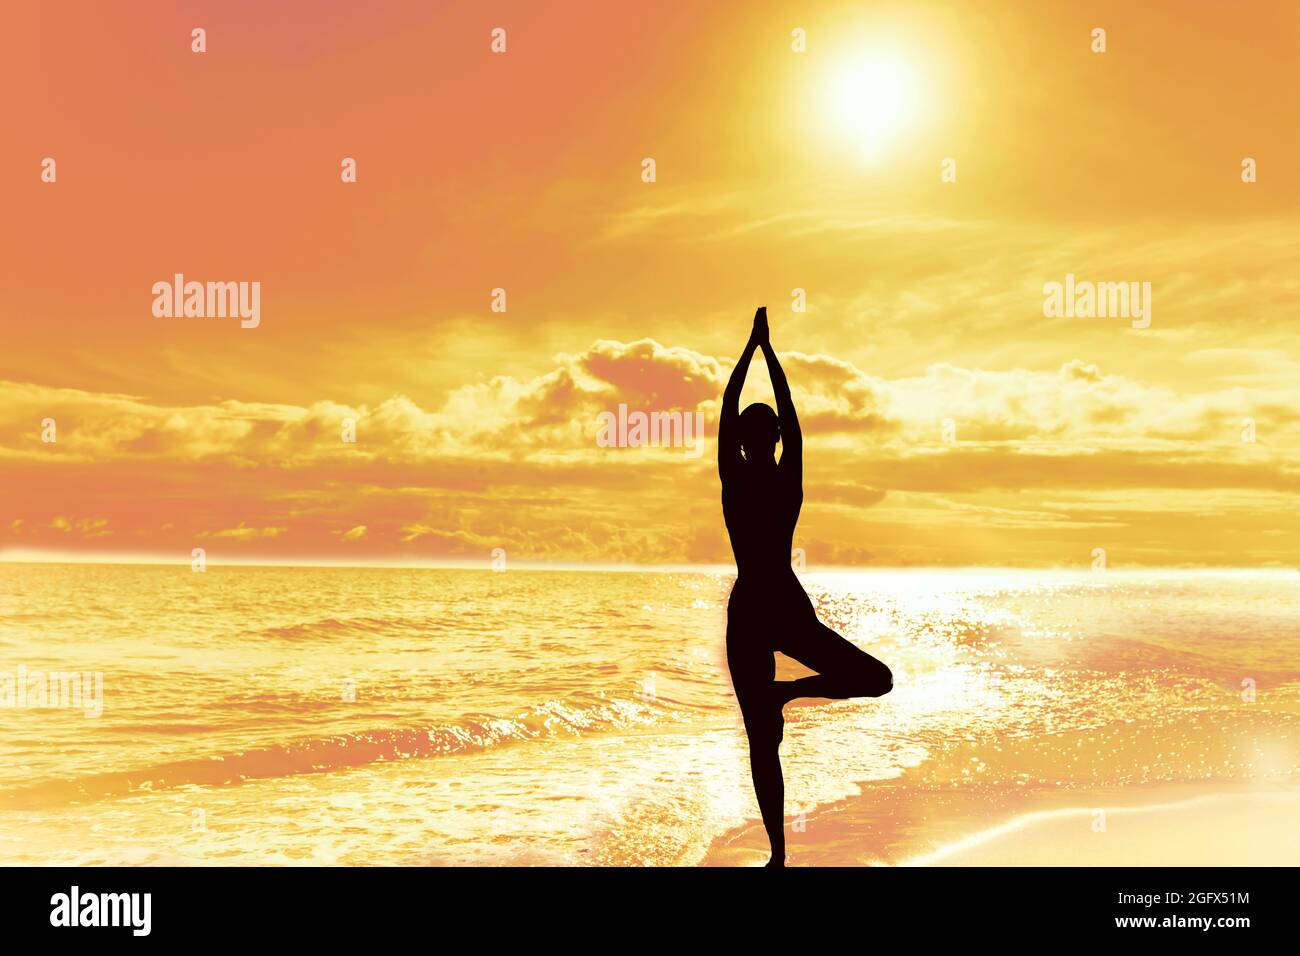 Silhouette einer Frau in der Baumpose des Yoga. Sonne Himmel und Meer. Gleichgewicht ruhige Harmonie Meditation. Konzept der psychischen Gesundheit Stockfoto